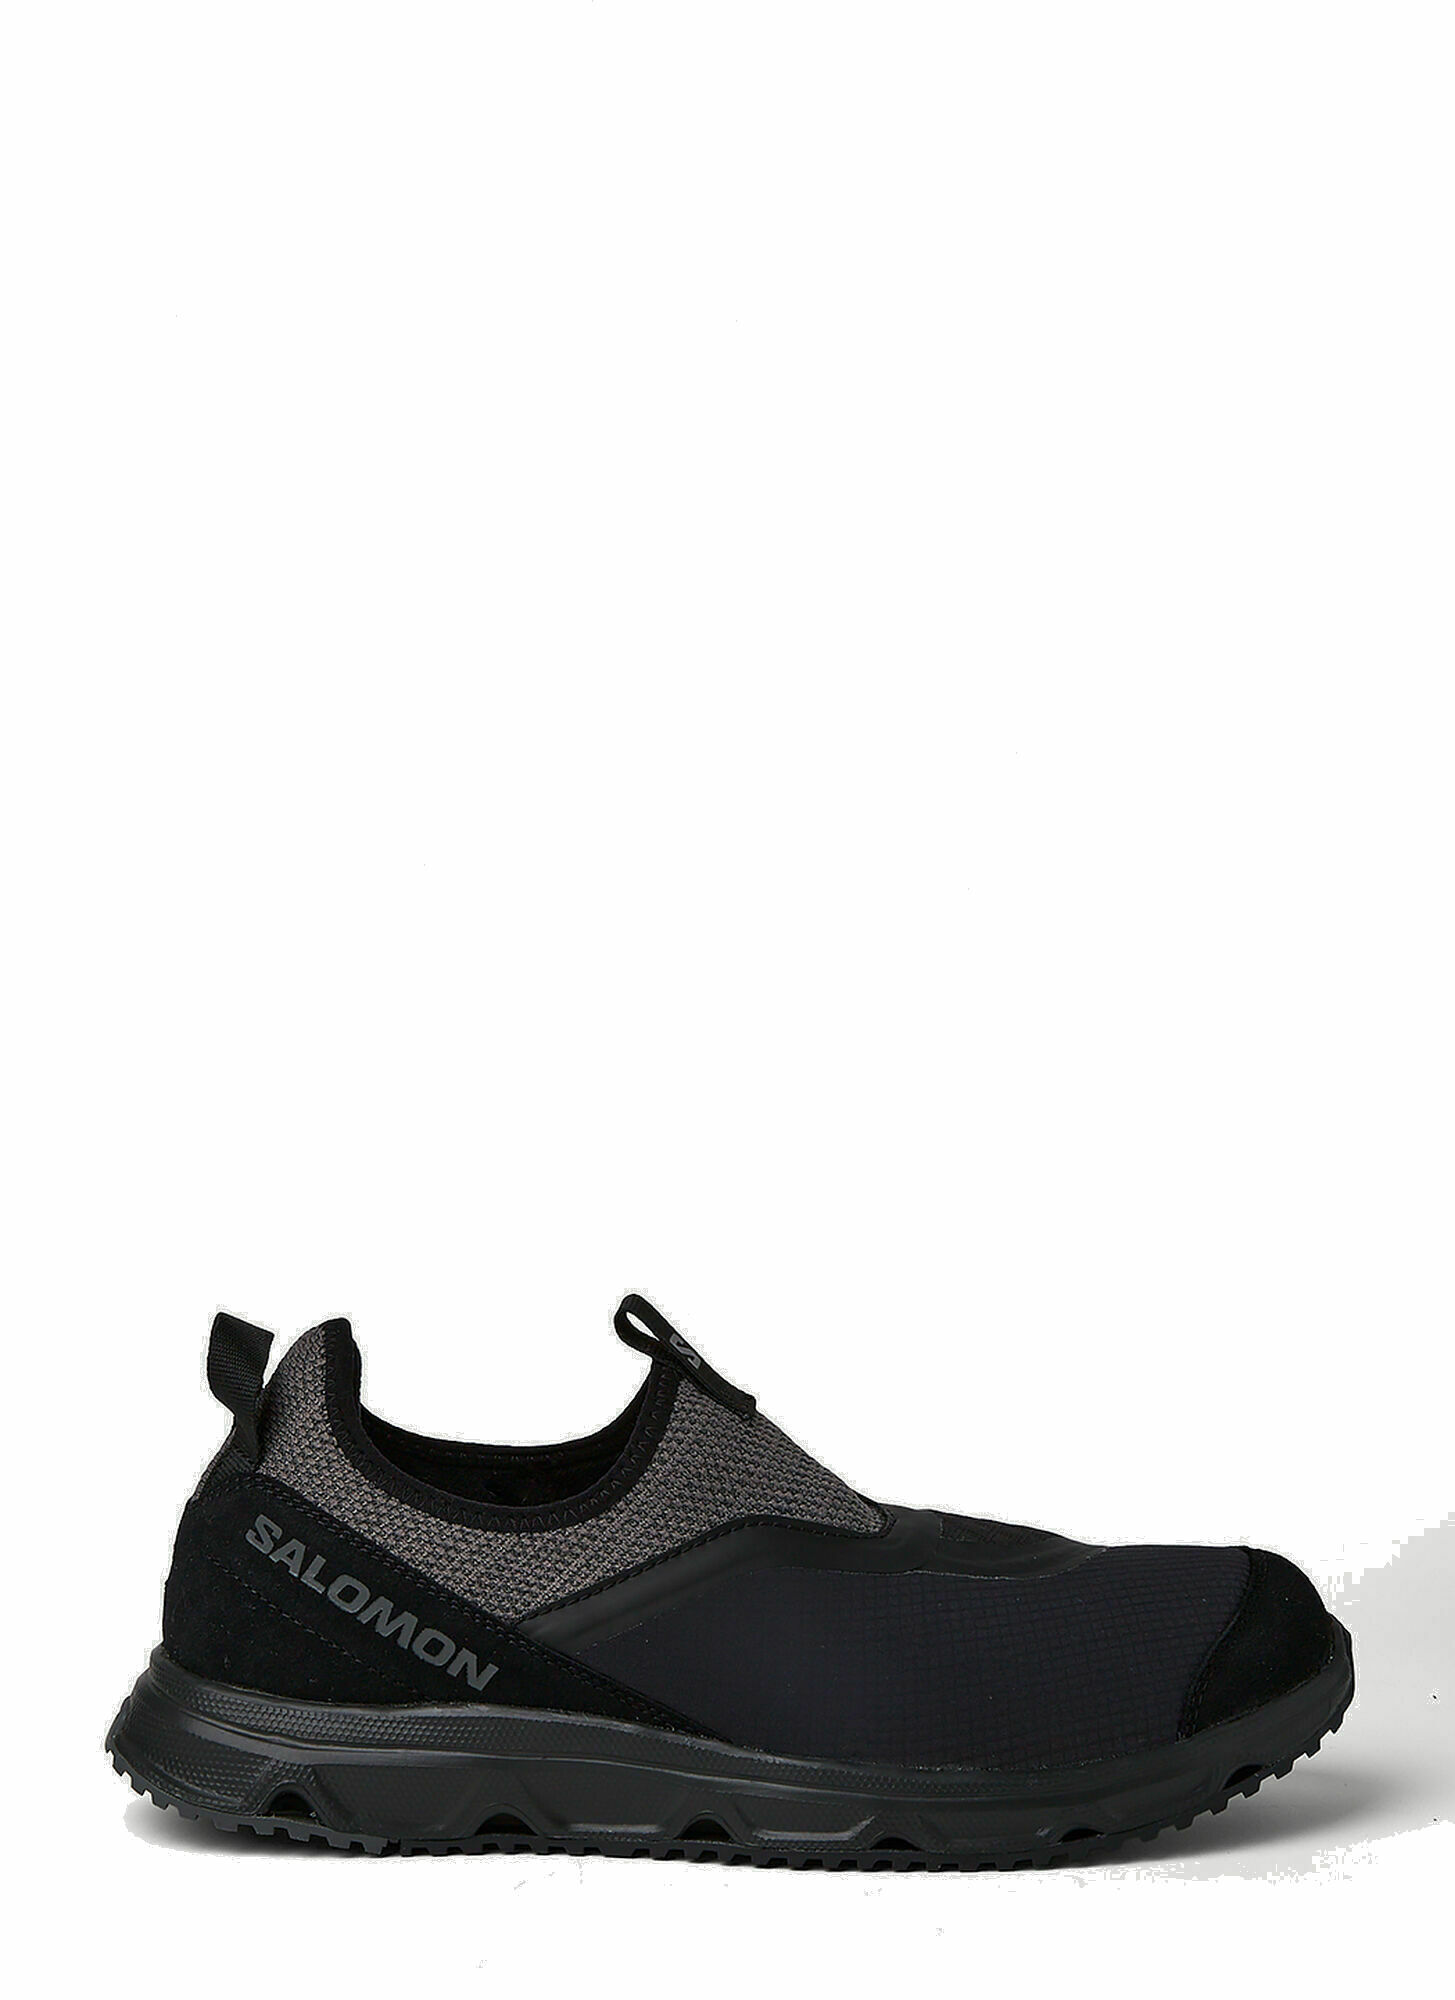 Photo: RX Snug Sneakers in Black